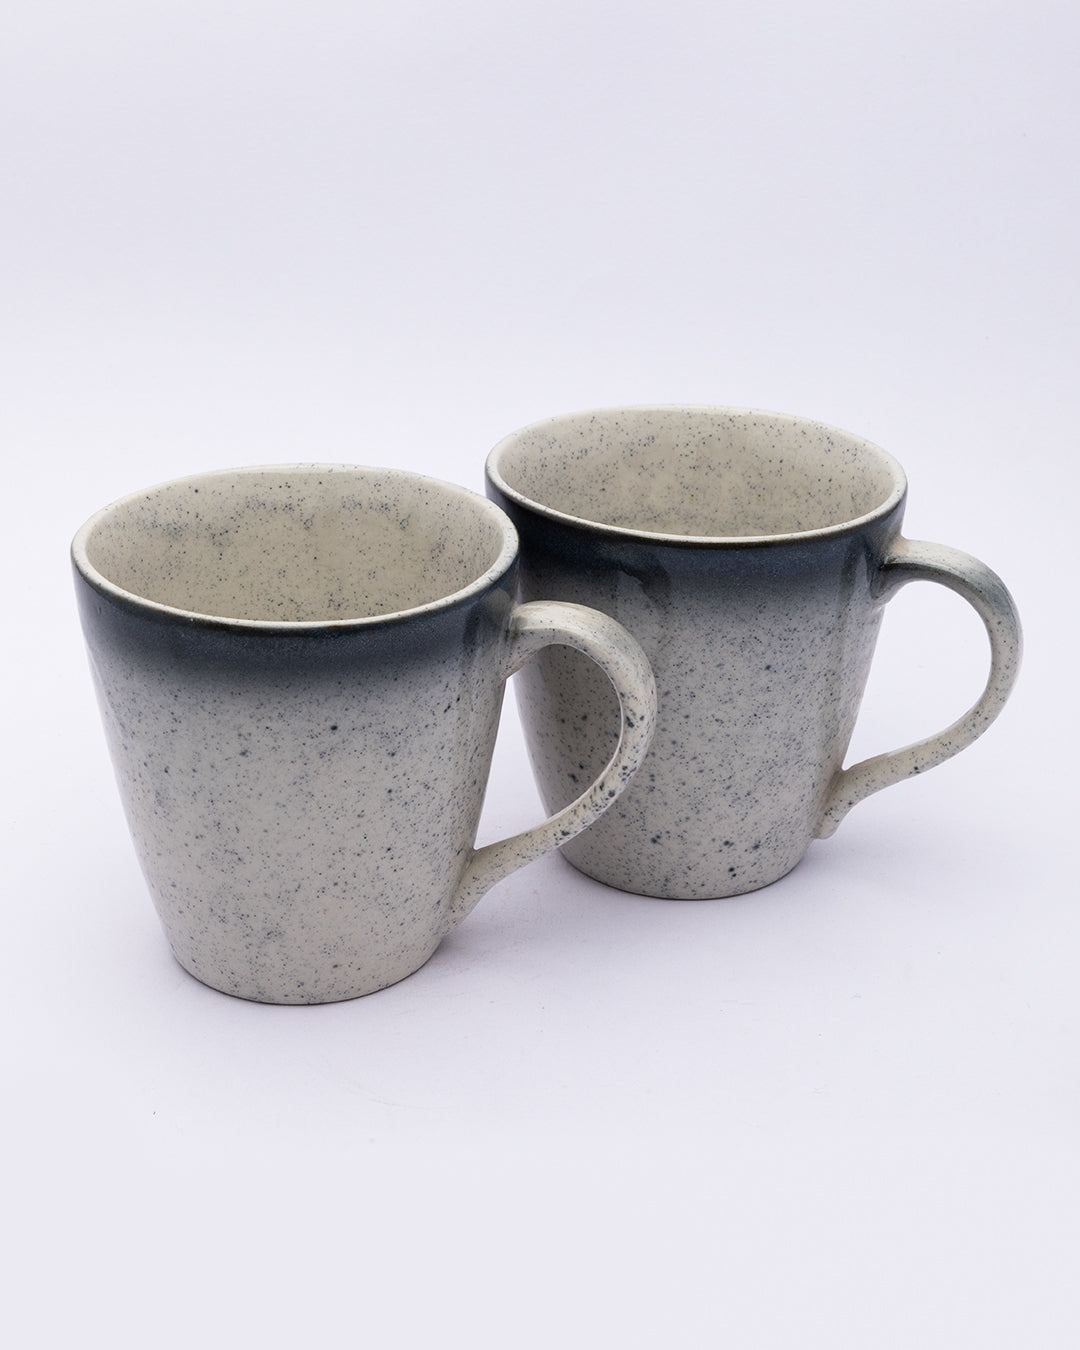 VON CASA Mug Set, Tea & Coffee Mug Set, Soup Mug, Handmade, Ivory, Ceramic, Set of 2